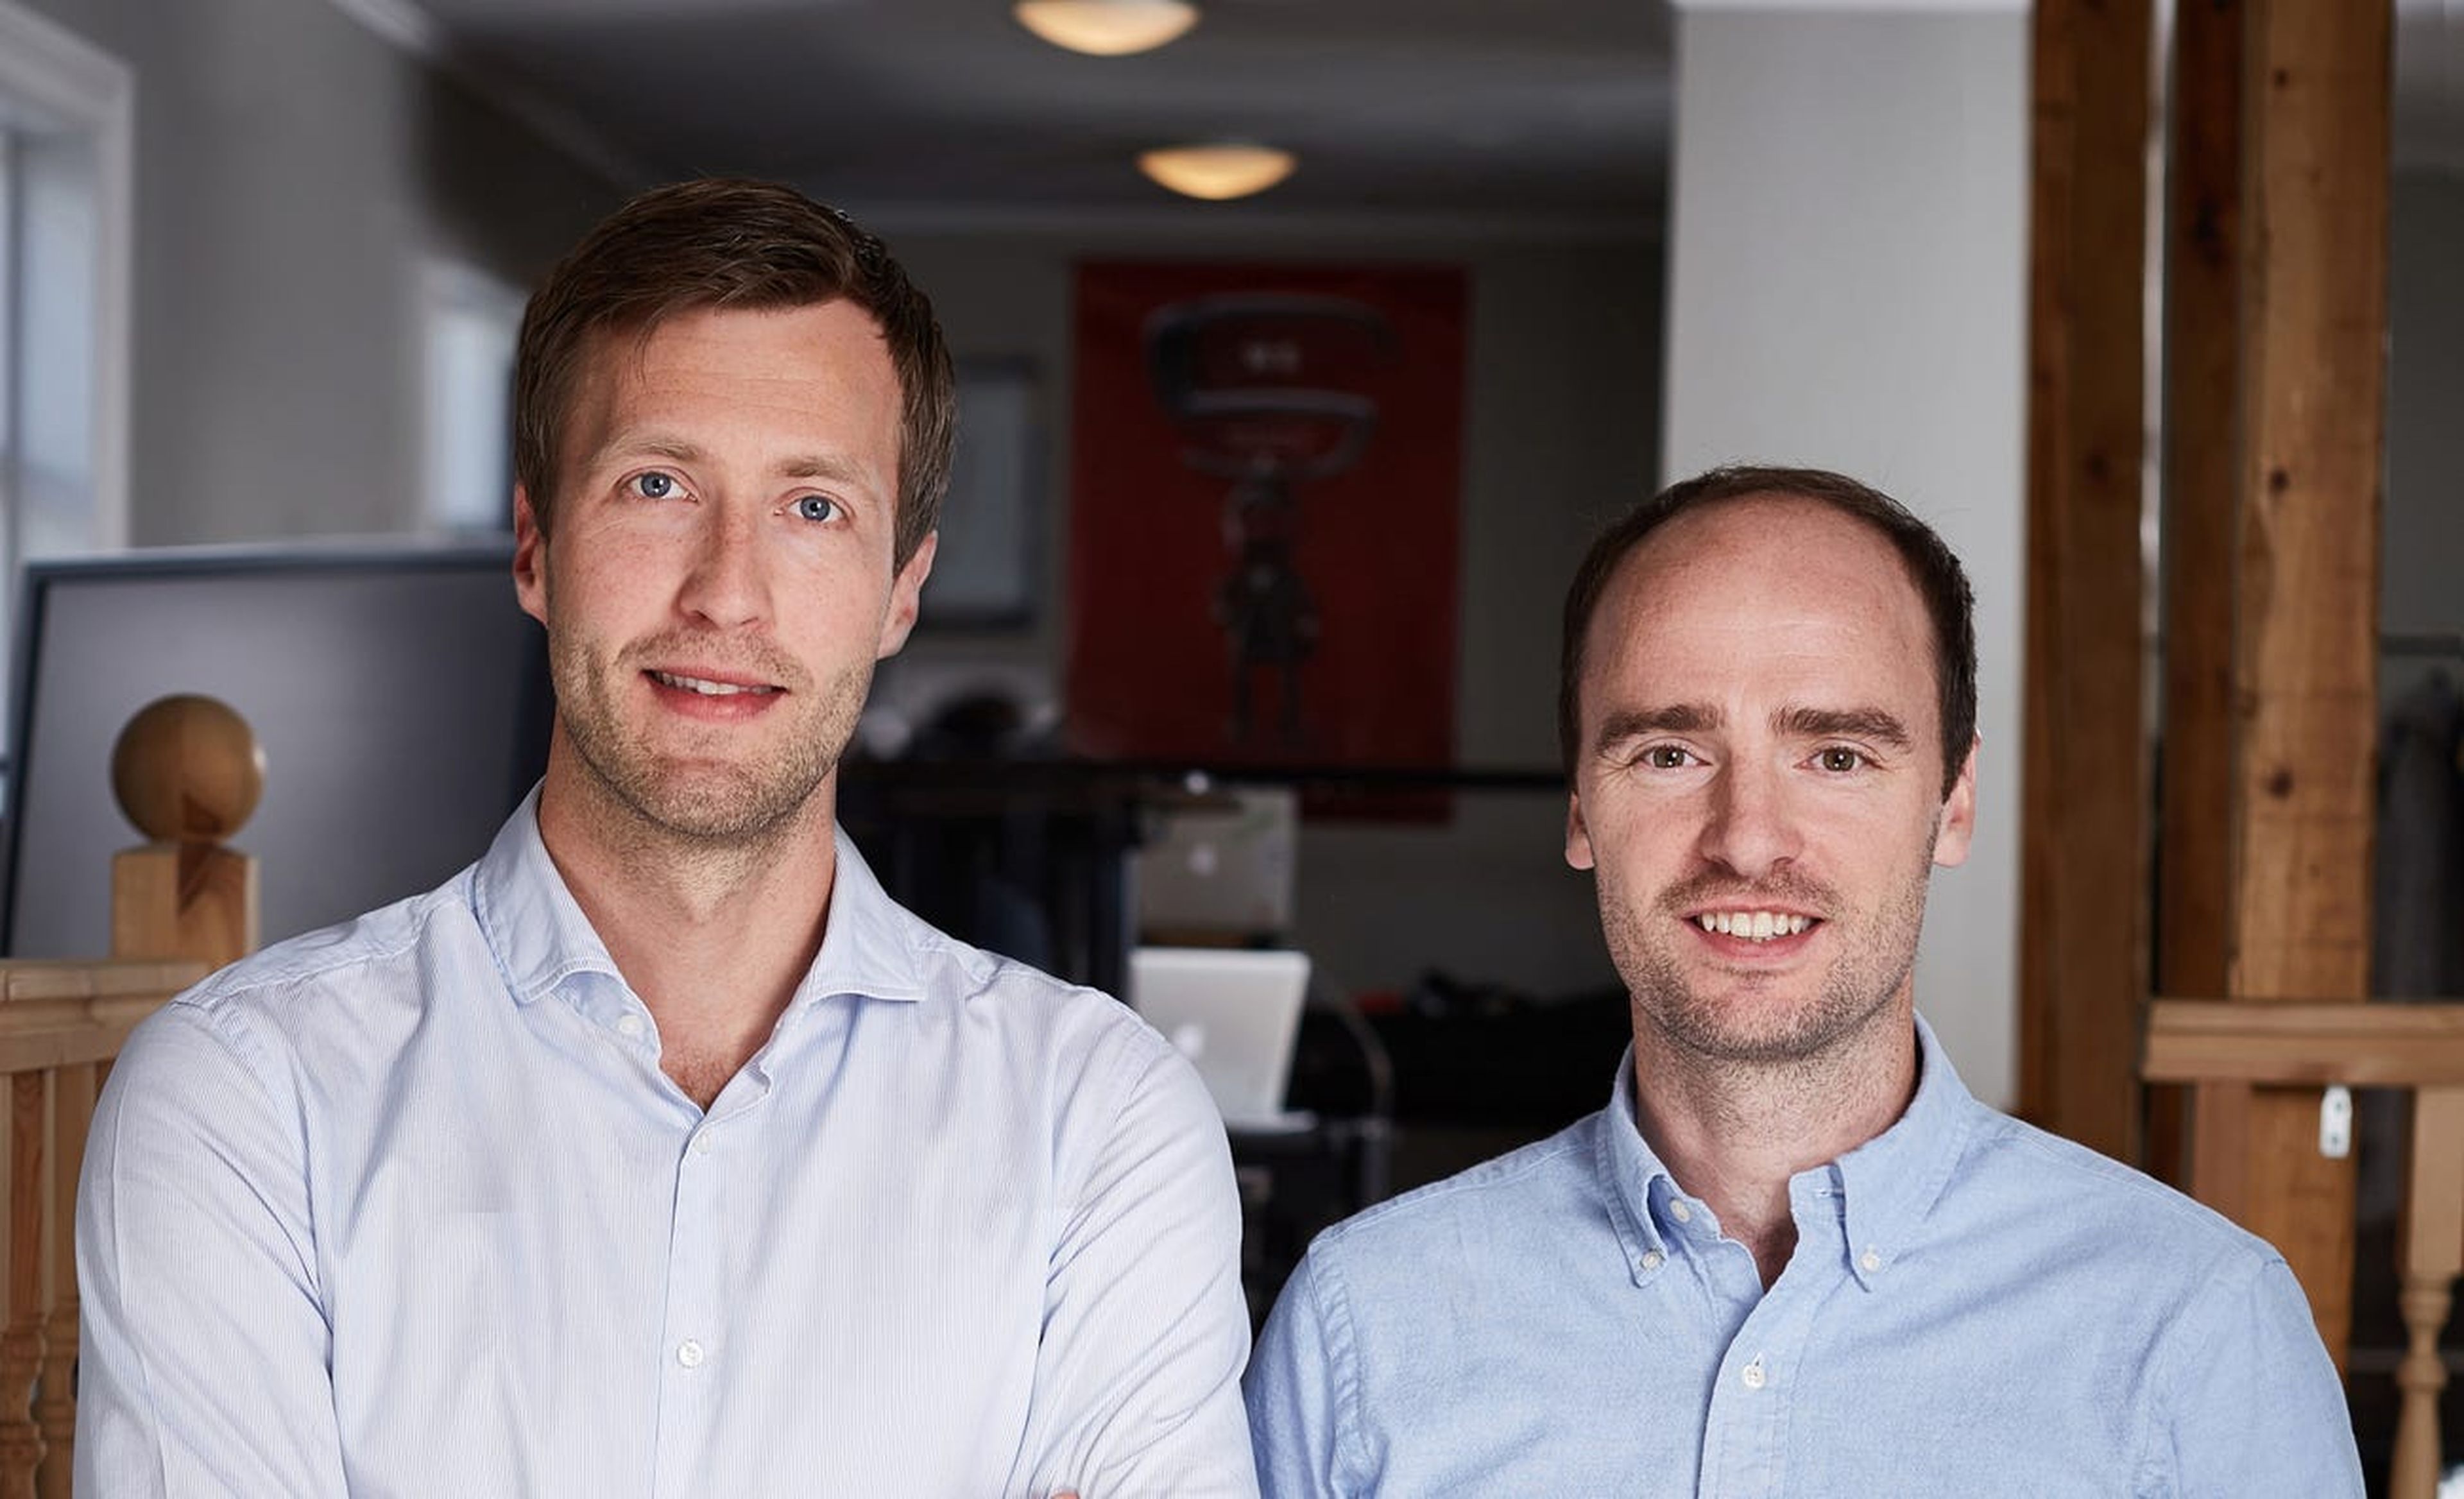 Los cofundadores de SidekickHealth. El Dr. Sam Oddsson, a la izquierda, es el director médico; el Dr. Tryggvi Thorgeirsson es el director general.